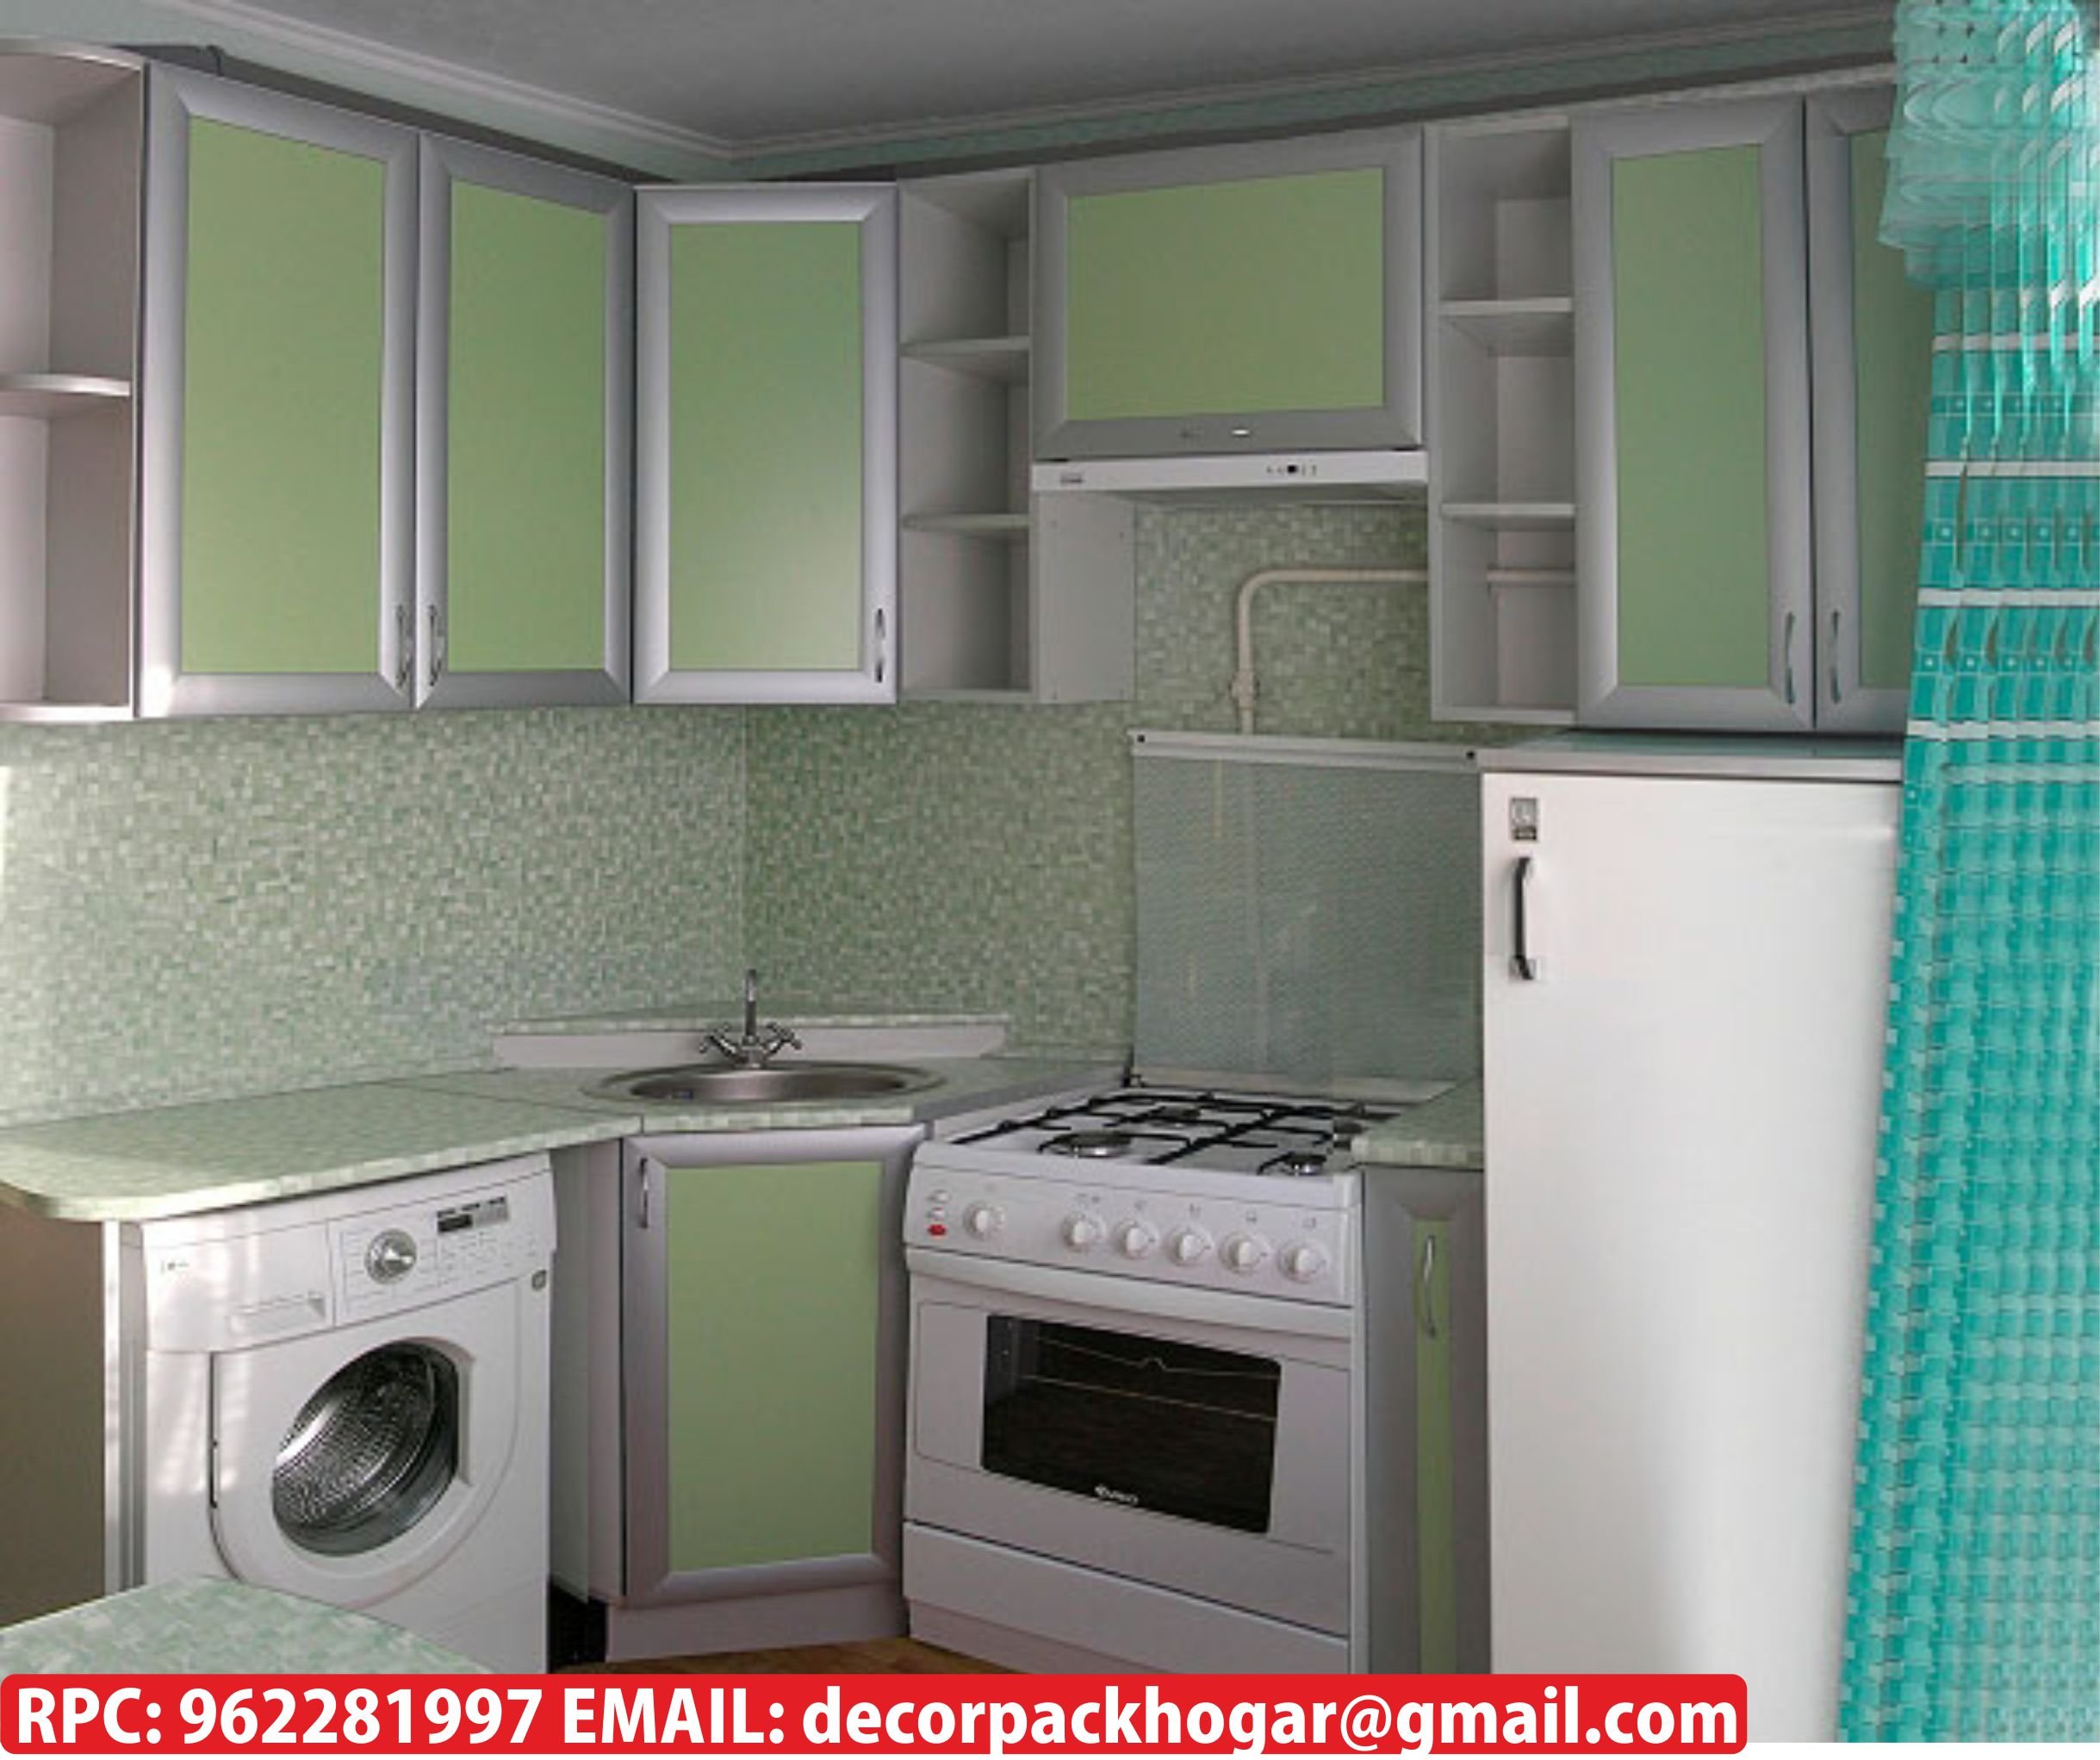 планировка кухни со стиральной машиной и холодильником